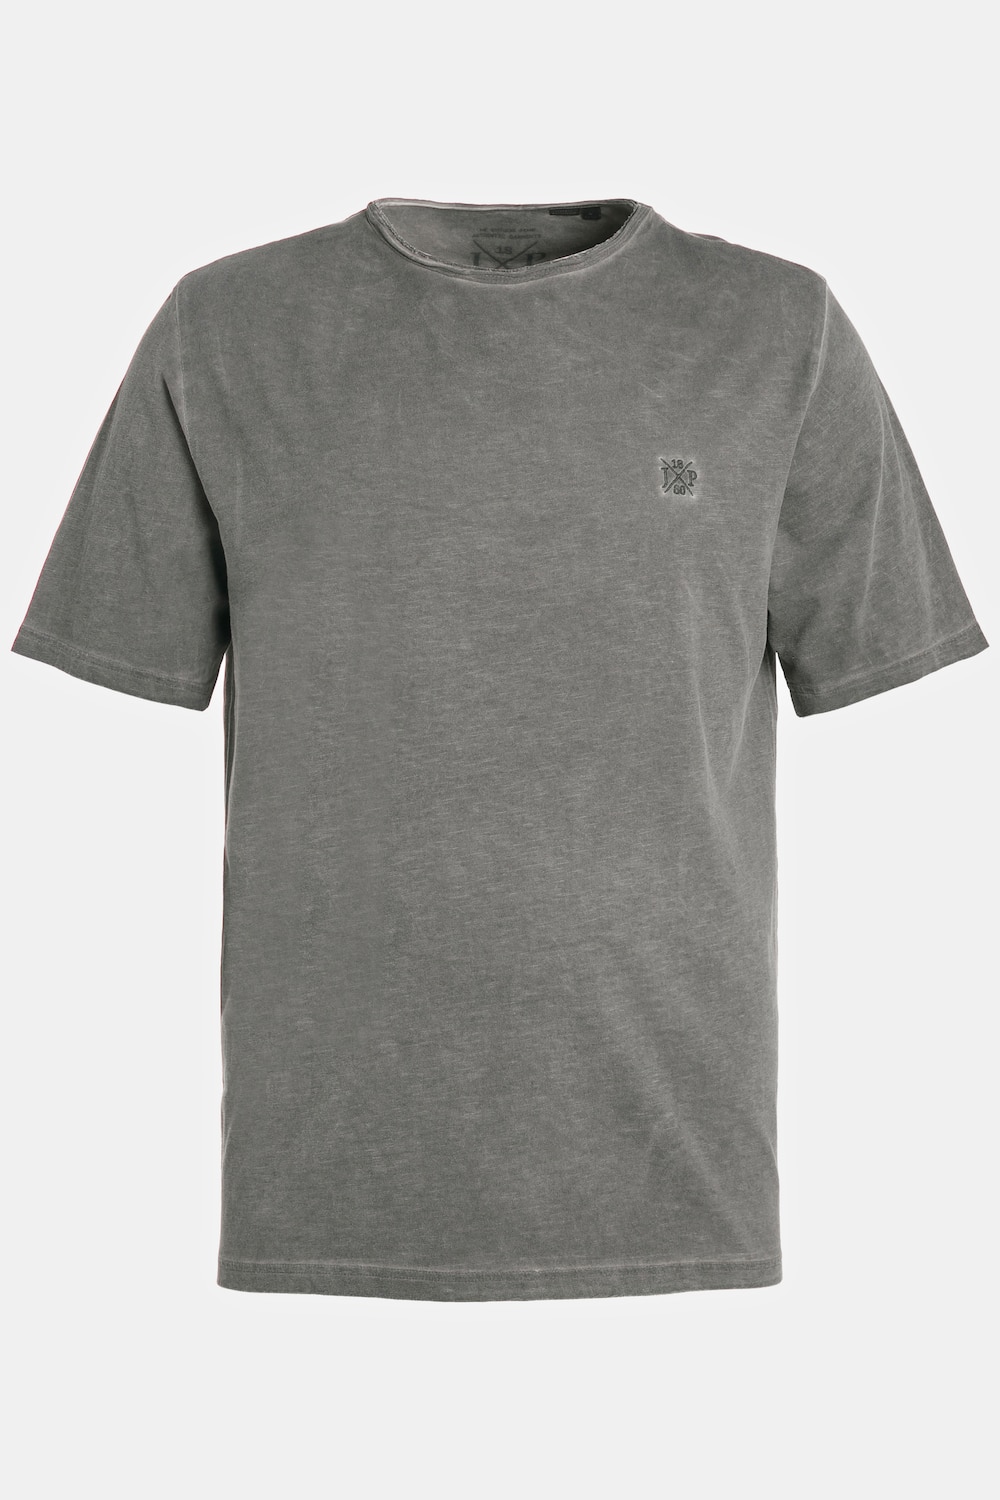 T-Shirt, Große Größen, Herren, grau, Größe: XXL, Baumwolle, JP1880